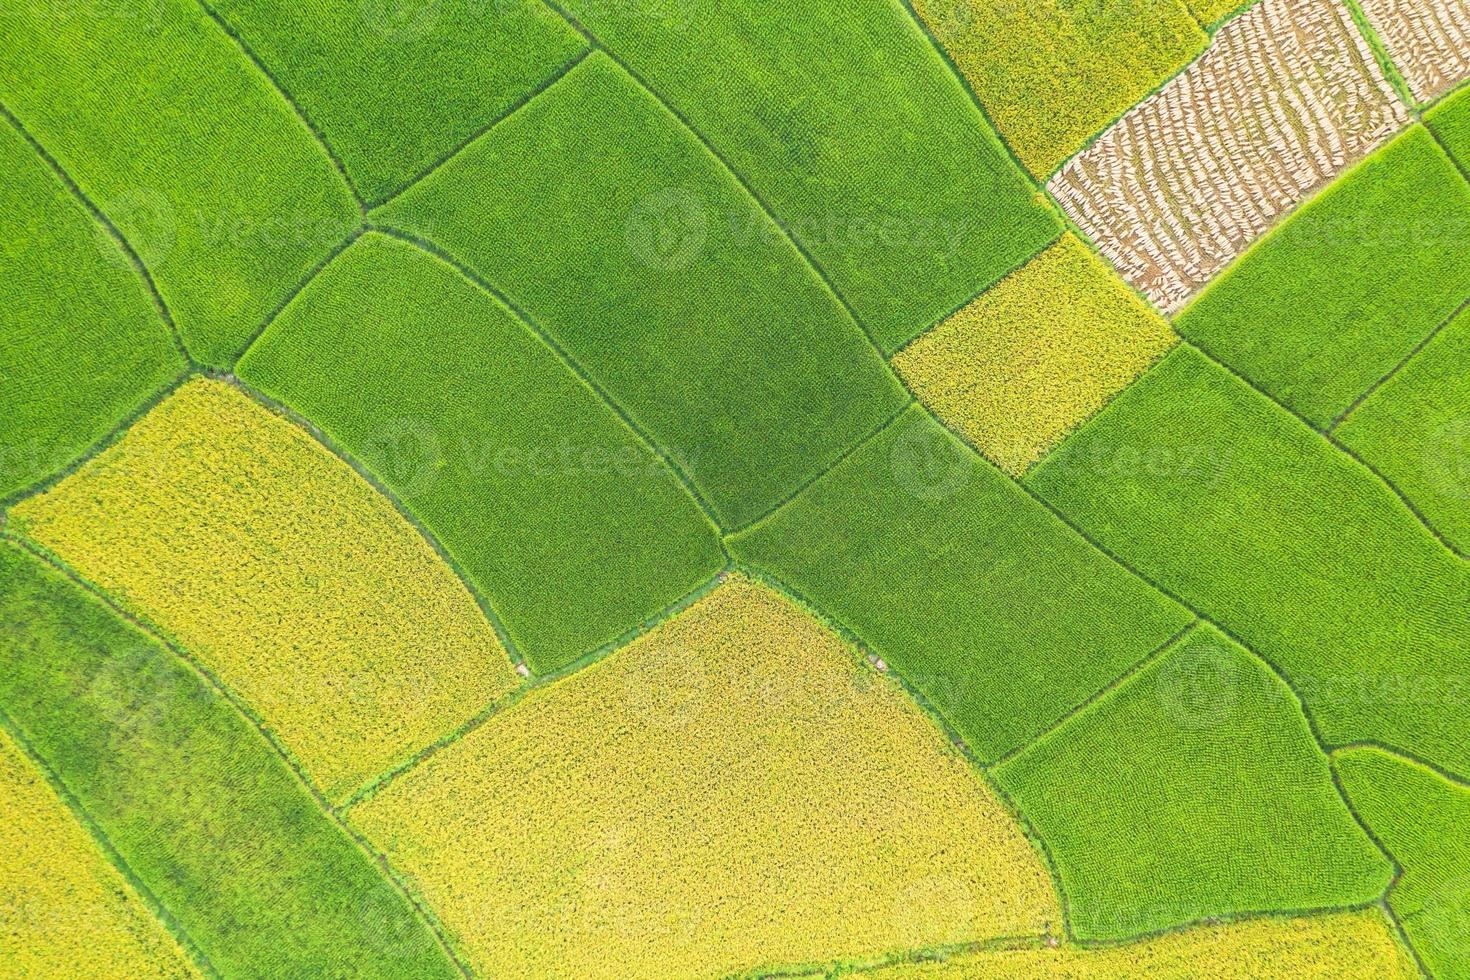 veduta aerea del campo di riso verde e giallo foto